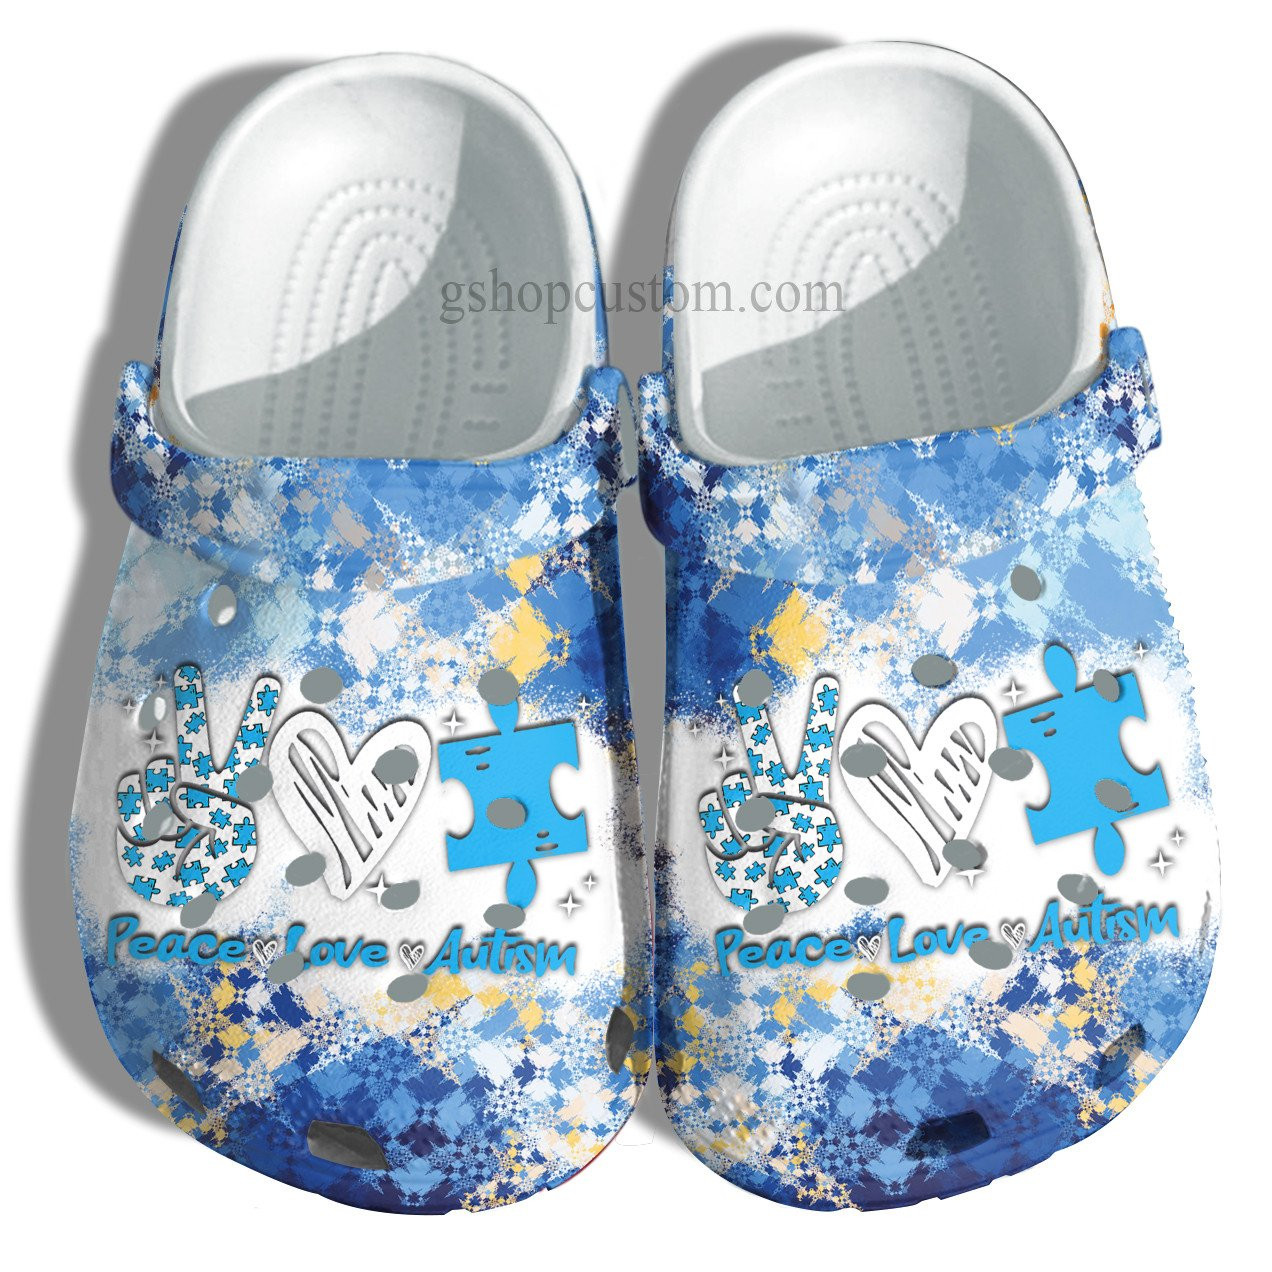 April Wear Blue Crocs Shoes - Peace Love Autism Awareness Shoes Croc Clogs Gifts Men Women